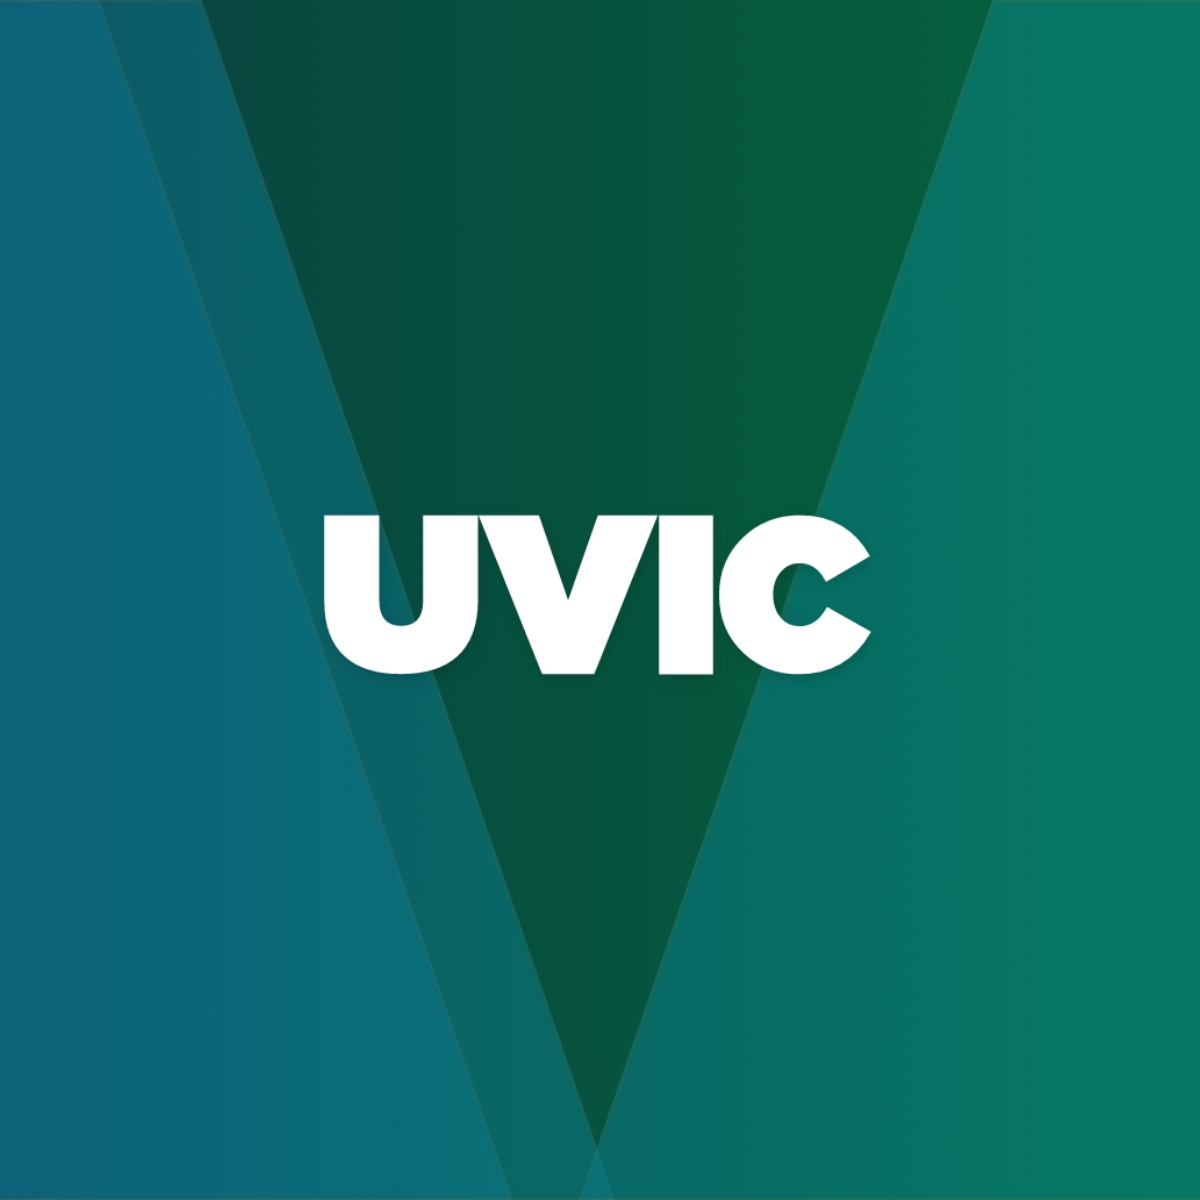 uvic feature2 - Case Studies